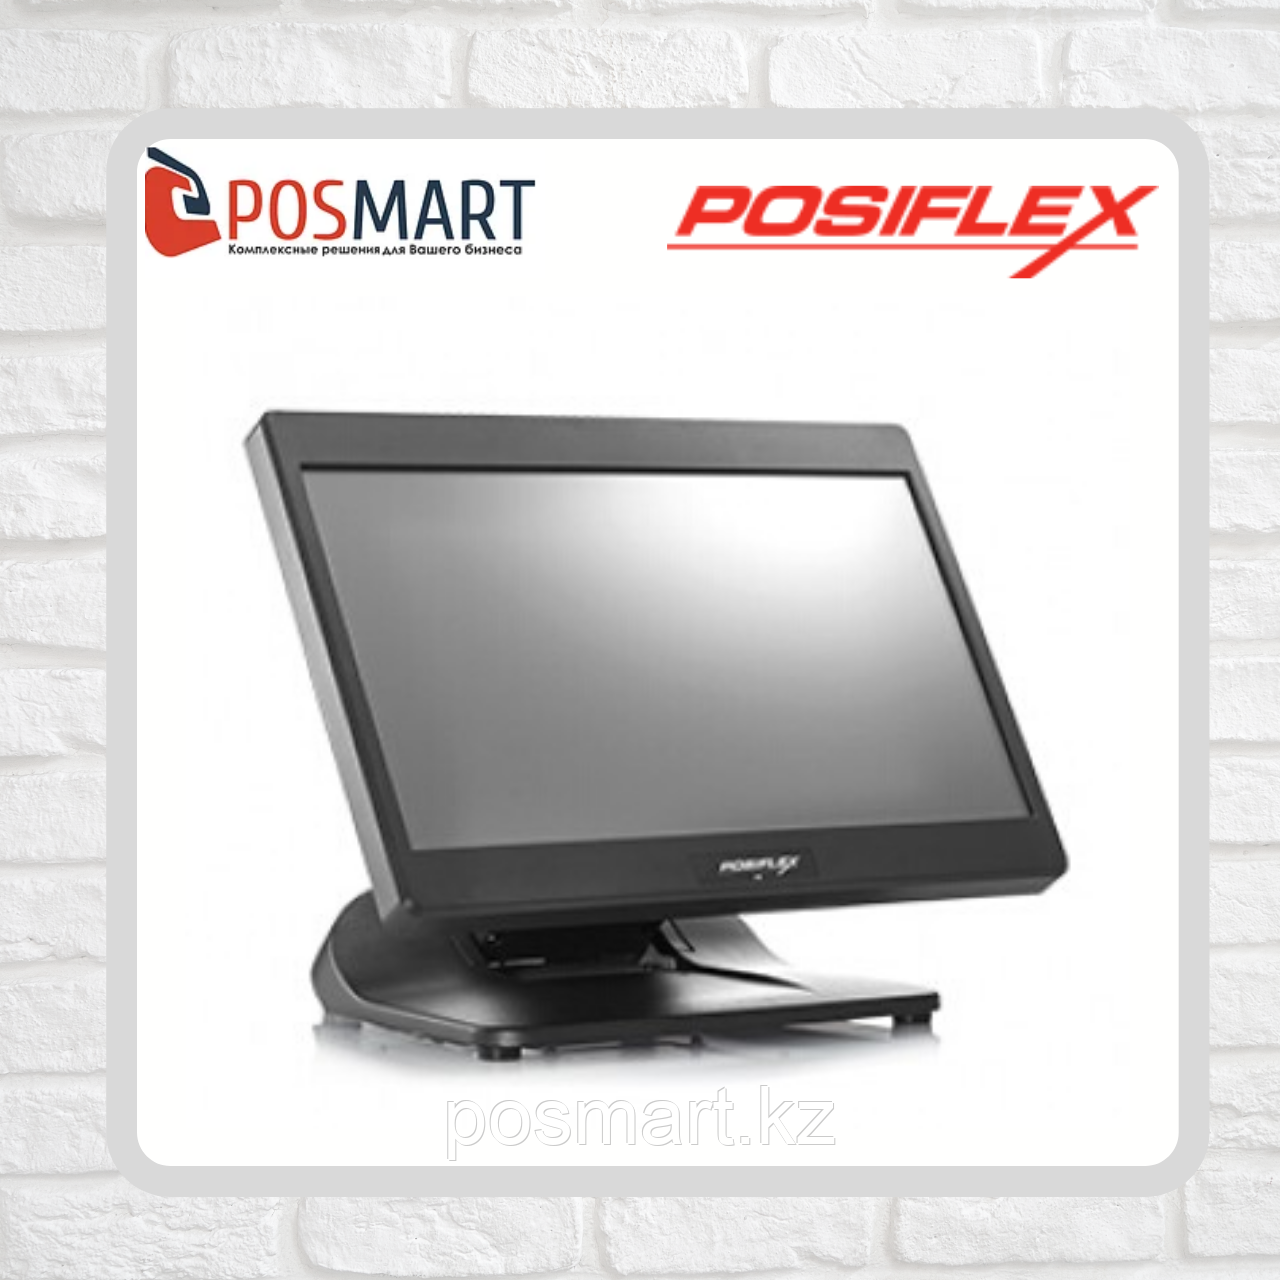 Сенсорный моноблок Posiflex PS-3416E+ОС Windows, фото 1